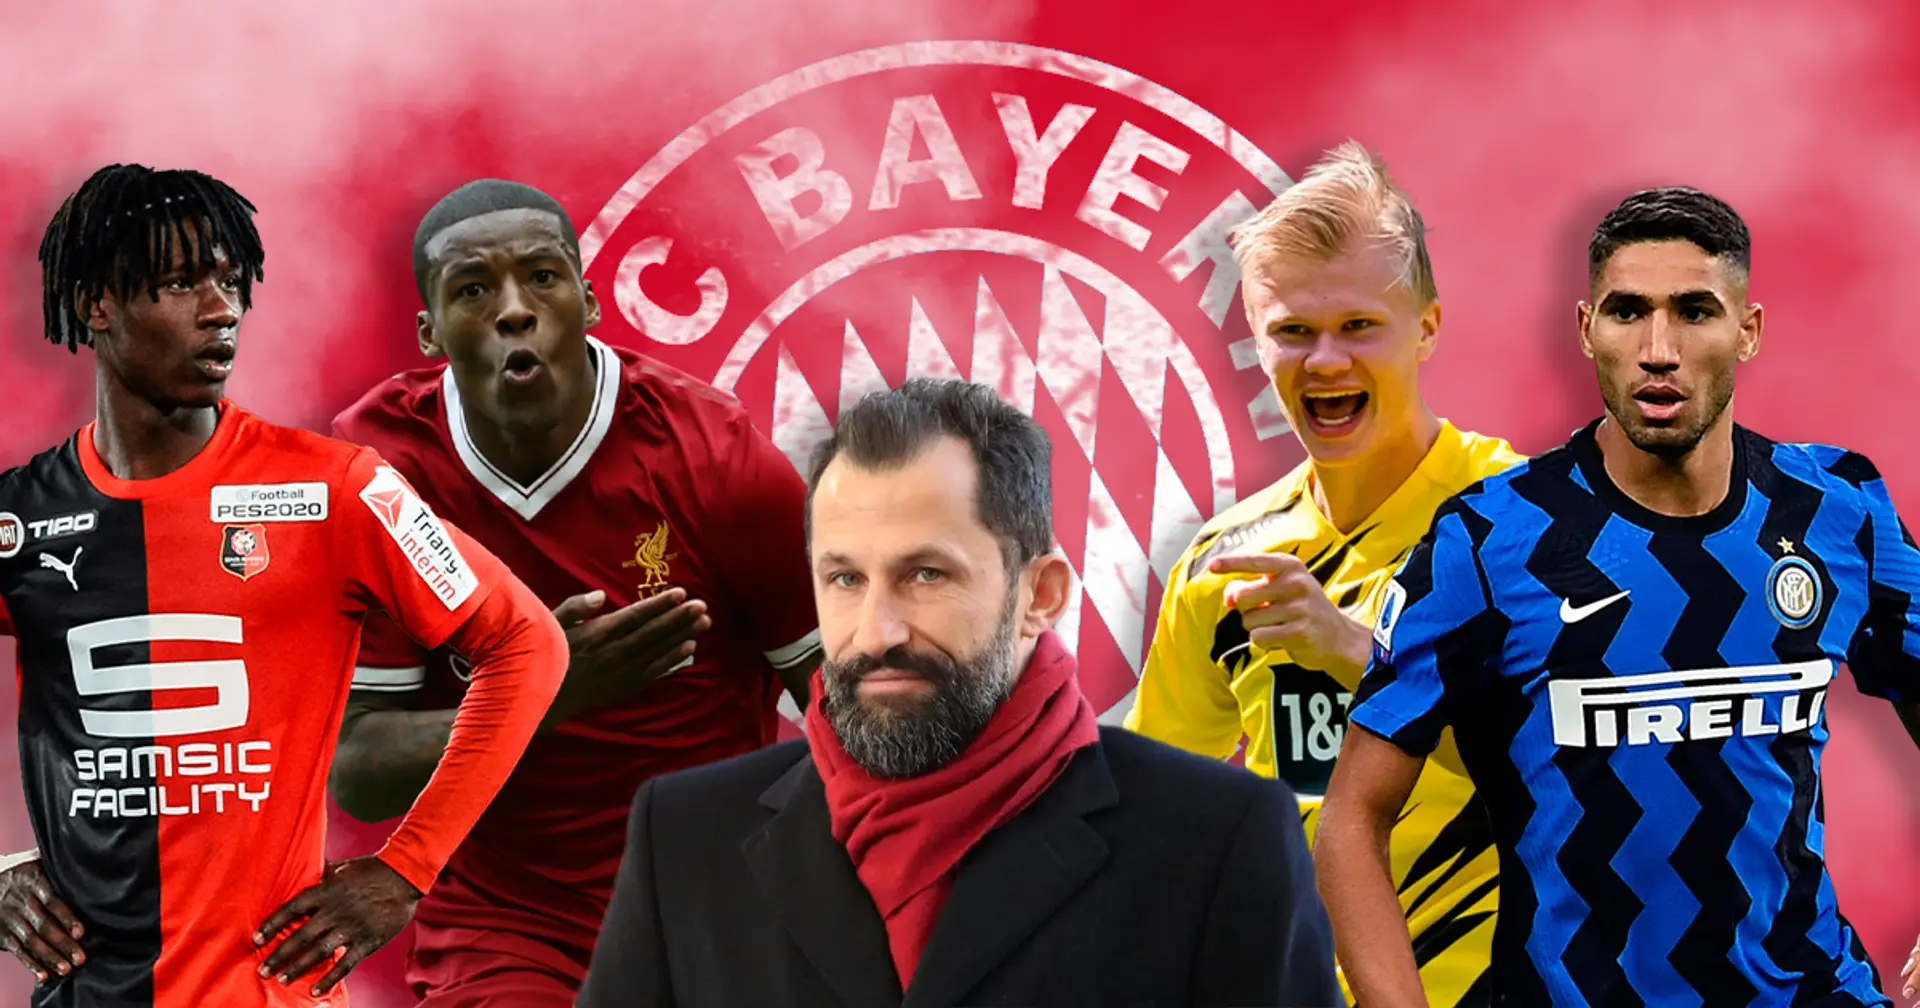 Kann sich Bayern einen Top-Transfer leisten? Finanz-Analyse zeigt, dass Salihamidzic eine schwierige Aufgabe hat